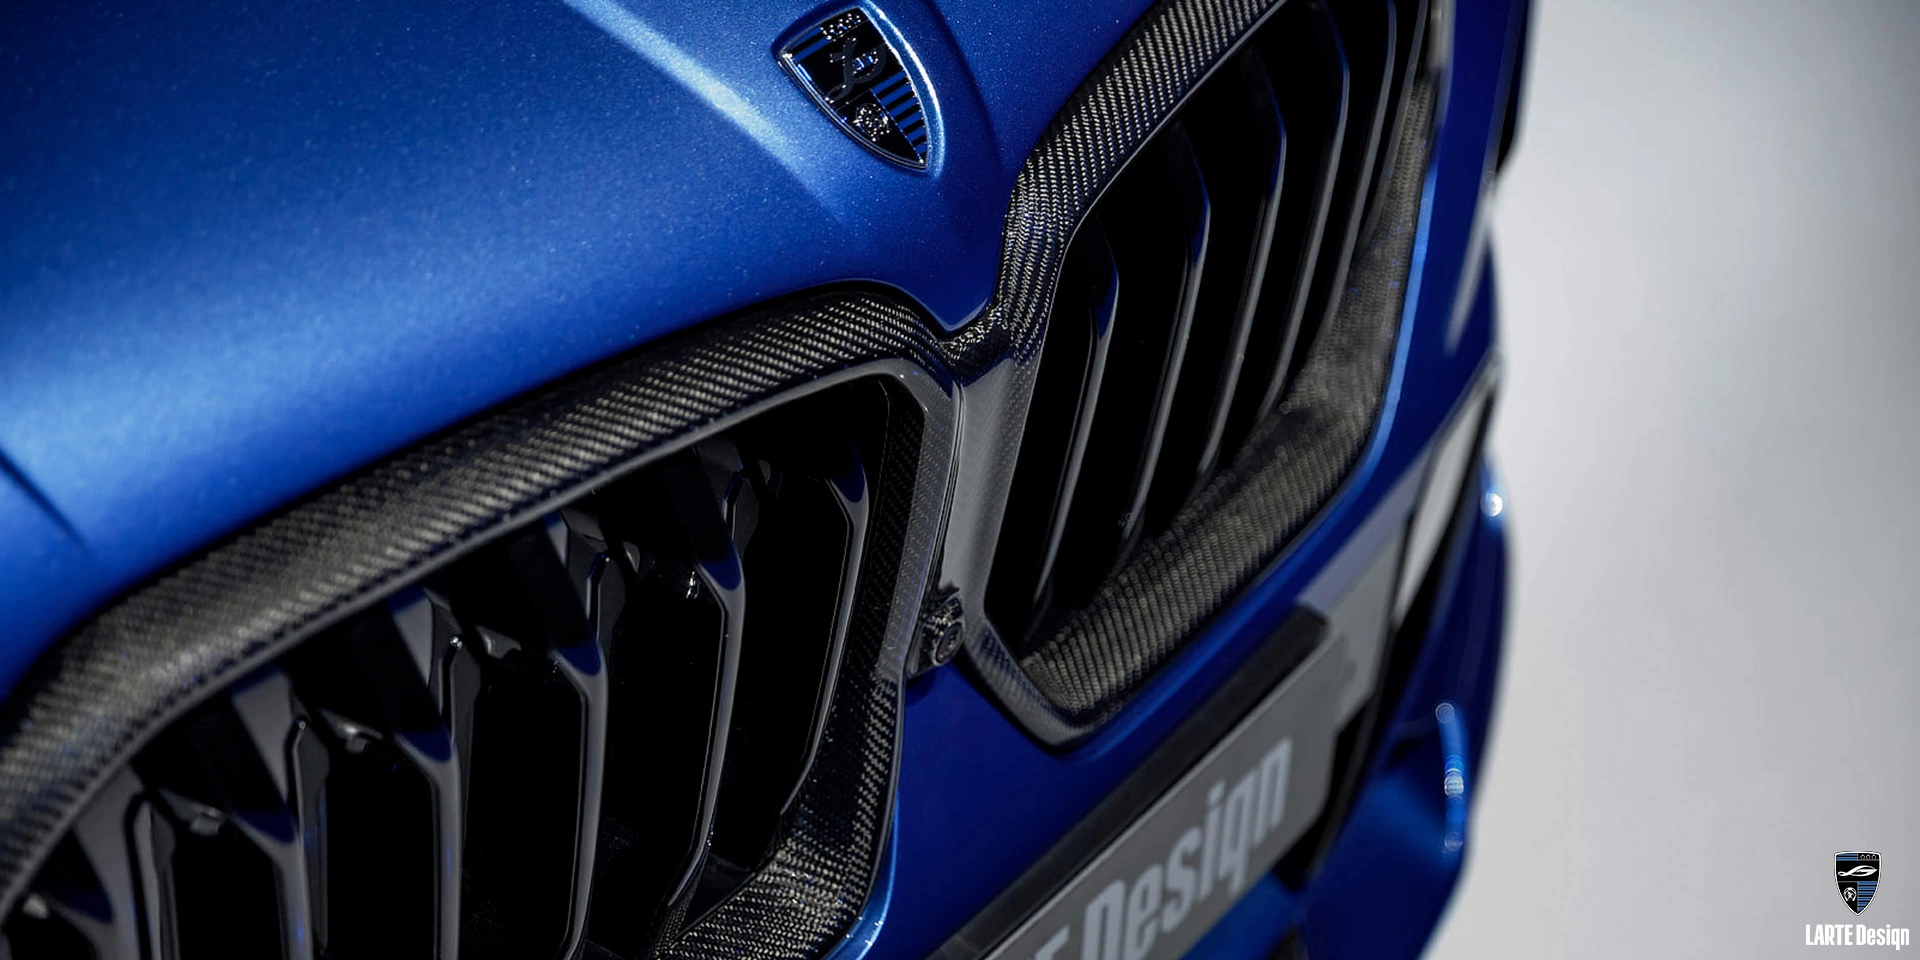 Installation des Automobil-Kühlergrills für den LARTE Performance BMW X6 M Sport G06 in Phytonic Blue Metallic